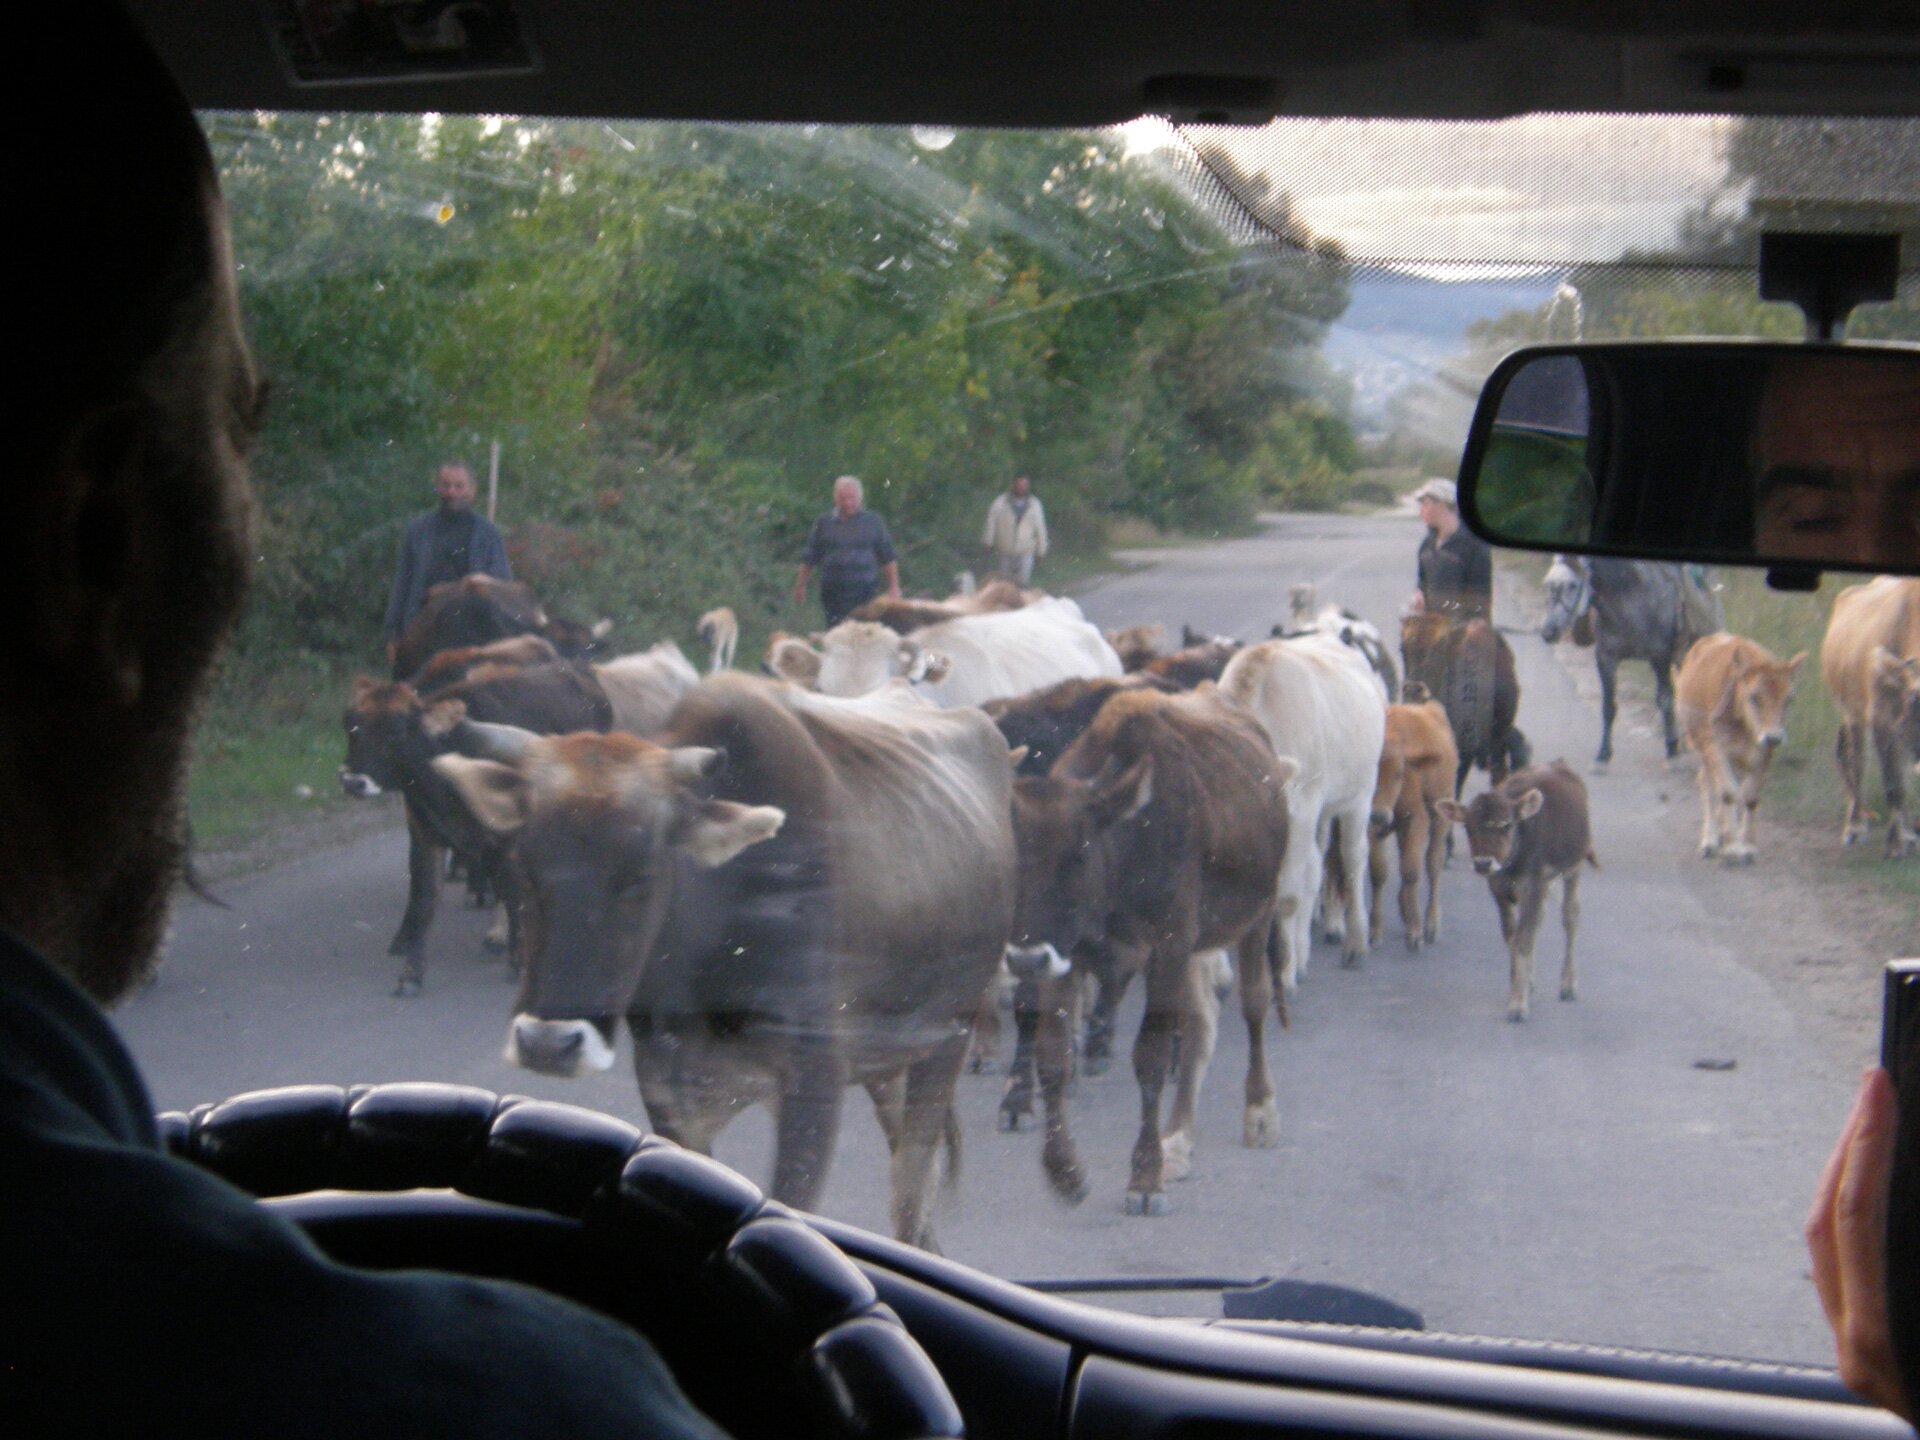 Na zdjęciu przestawiona jest droga z perspektywy kierowcy samochodu zza szyby. Droga ta została zablokowana przez stado bydła, prowadzone przez kilku mężczyzn. Dwóch z nich jedzie konno. Zbocze drogi jest gęsto porośnięte roślinnością.